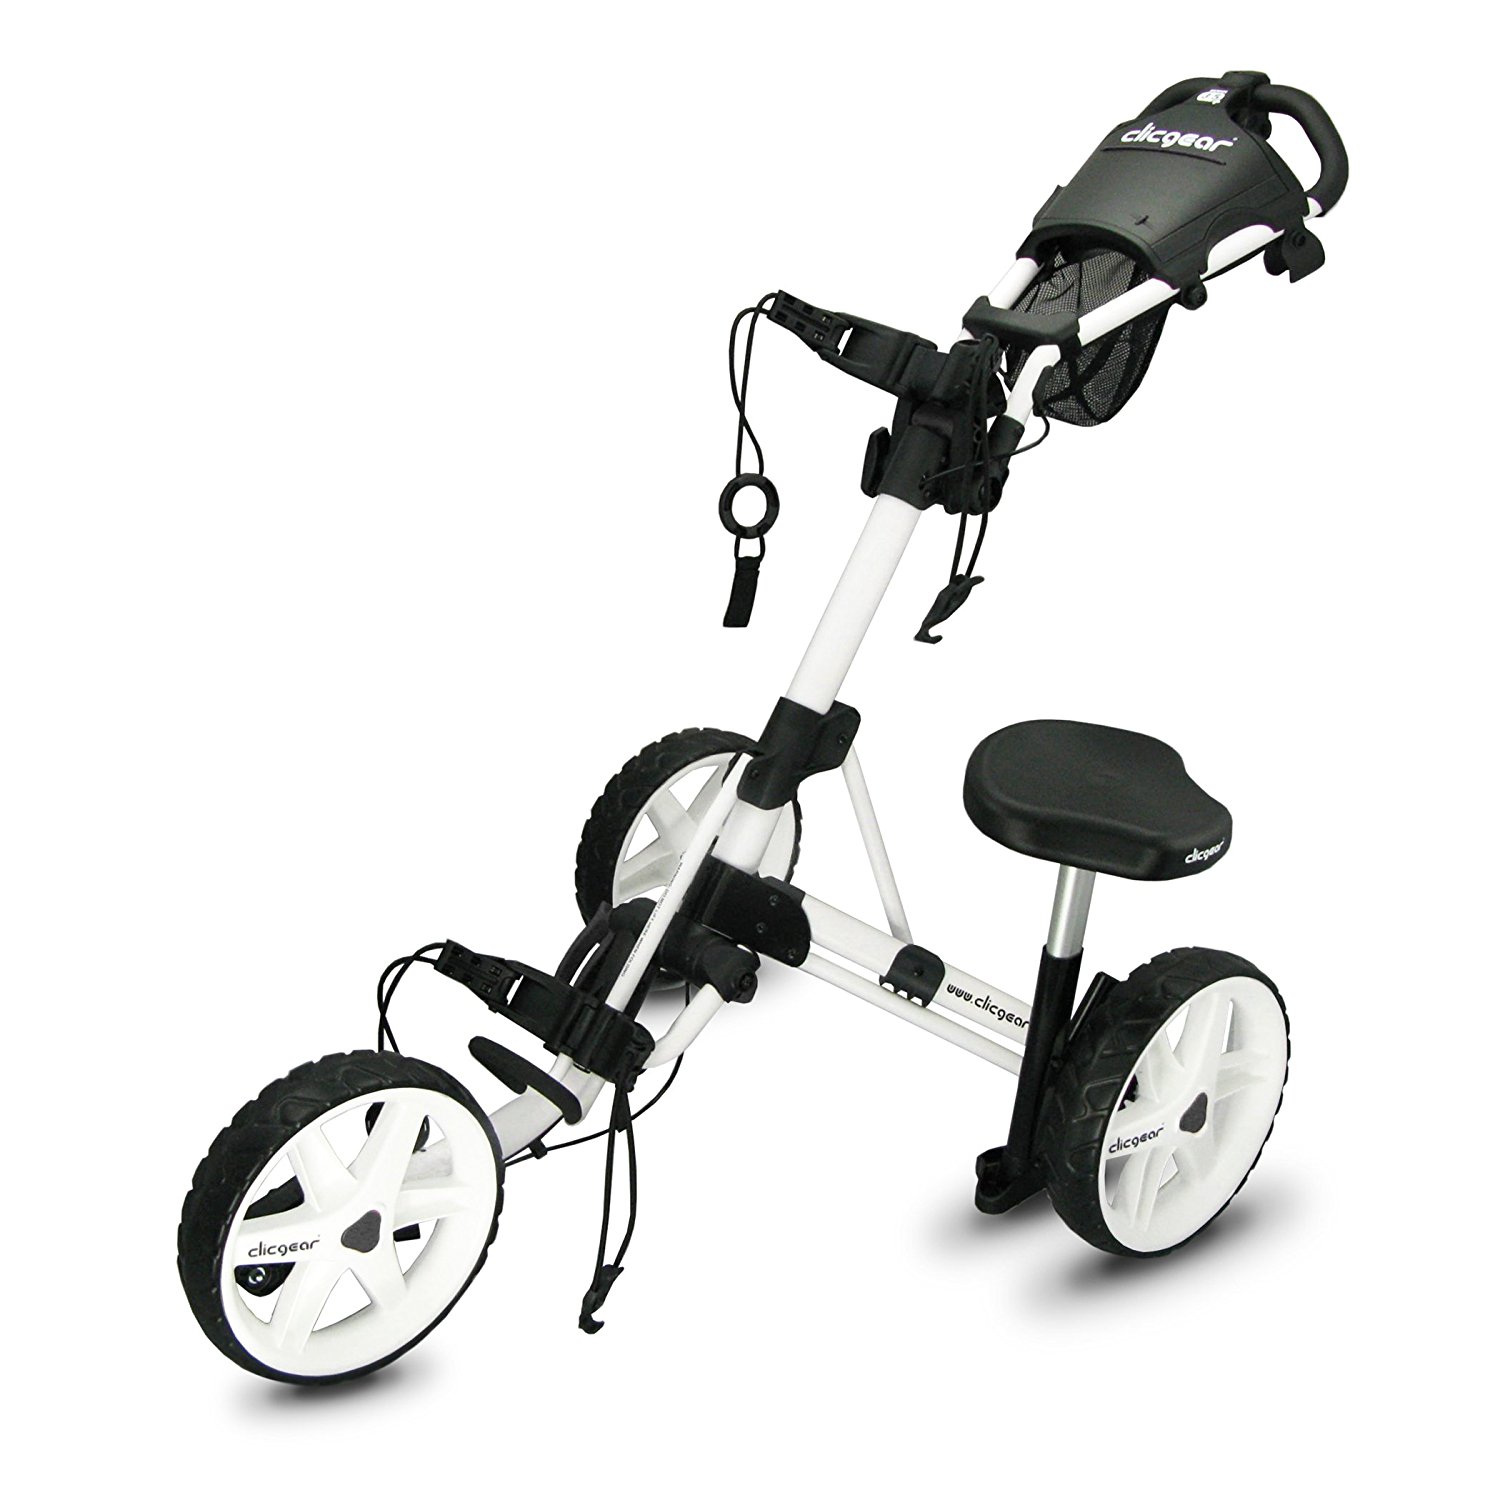 Clickgear Golf Accessory Push Cart Seats